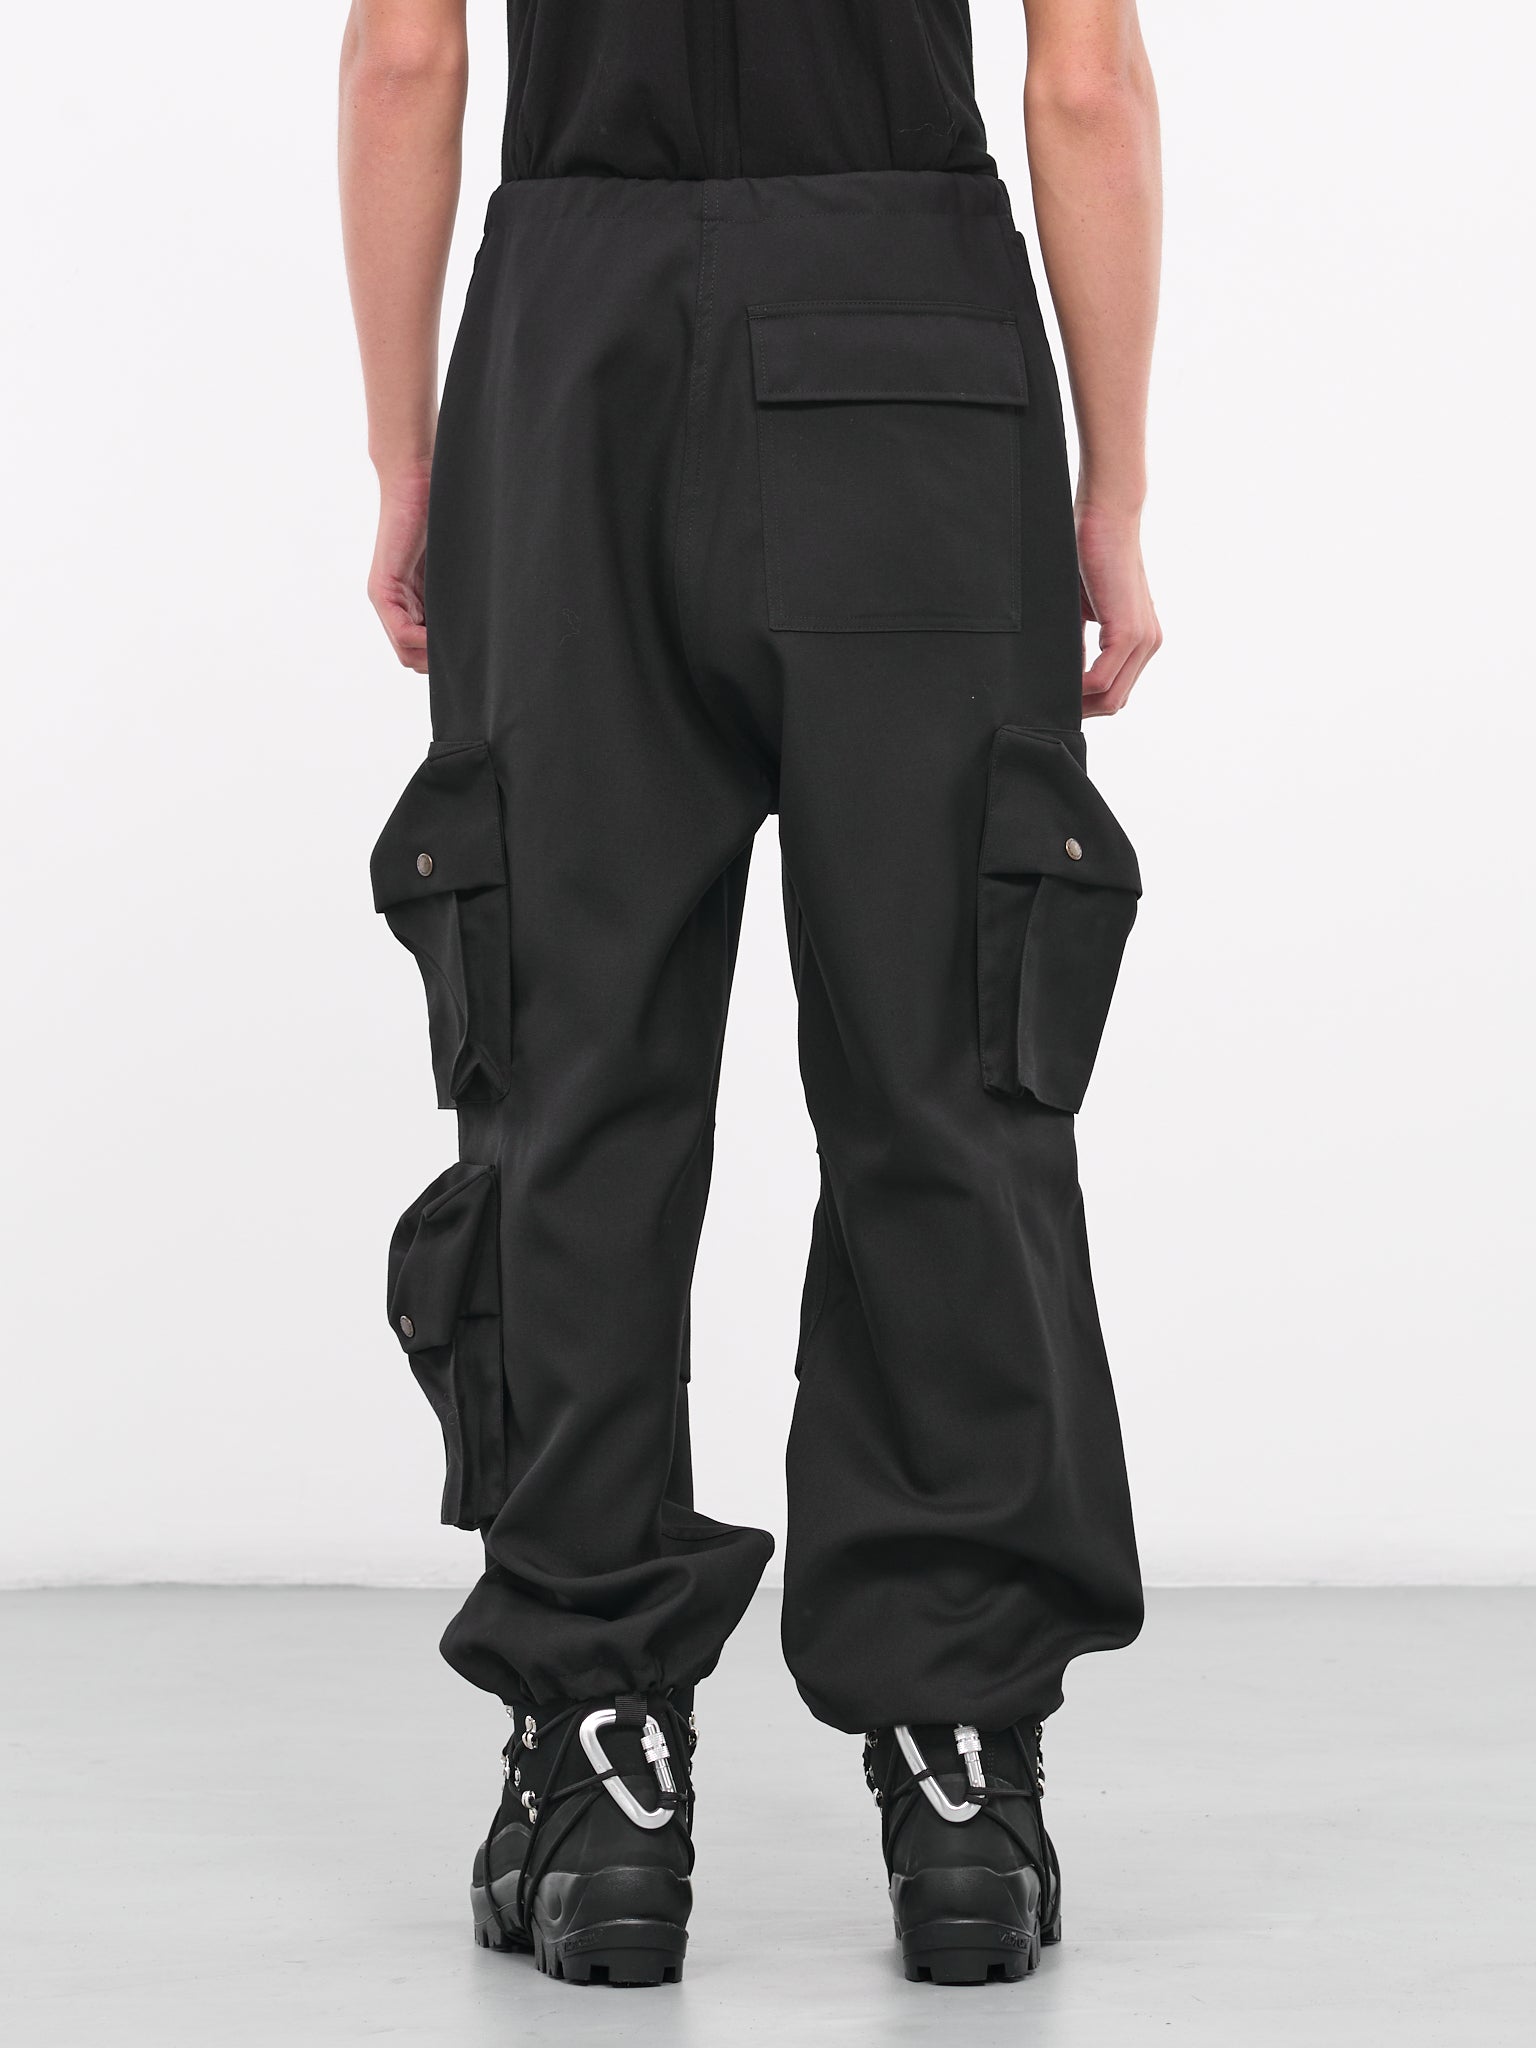 Blair Trousers (WTR14-0099-BLAIR-BLACK)